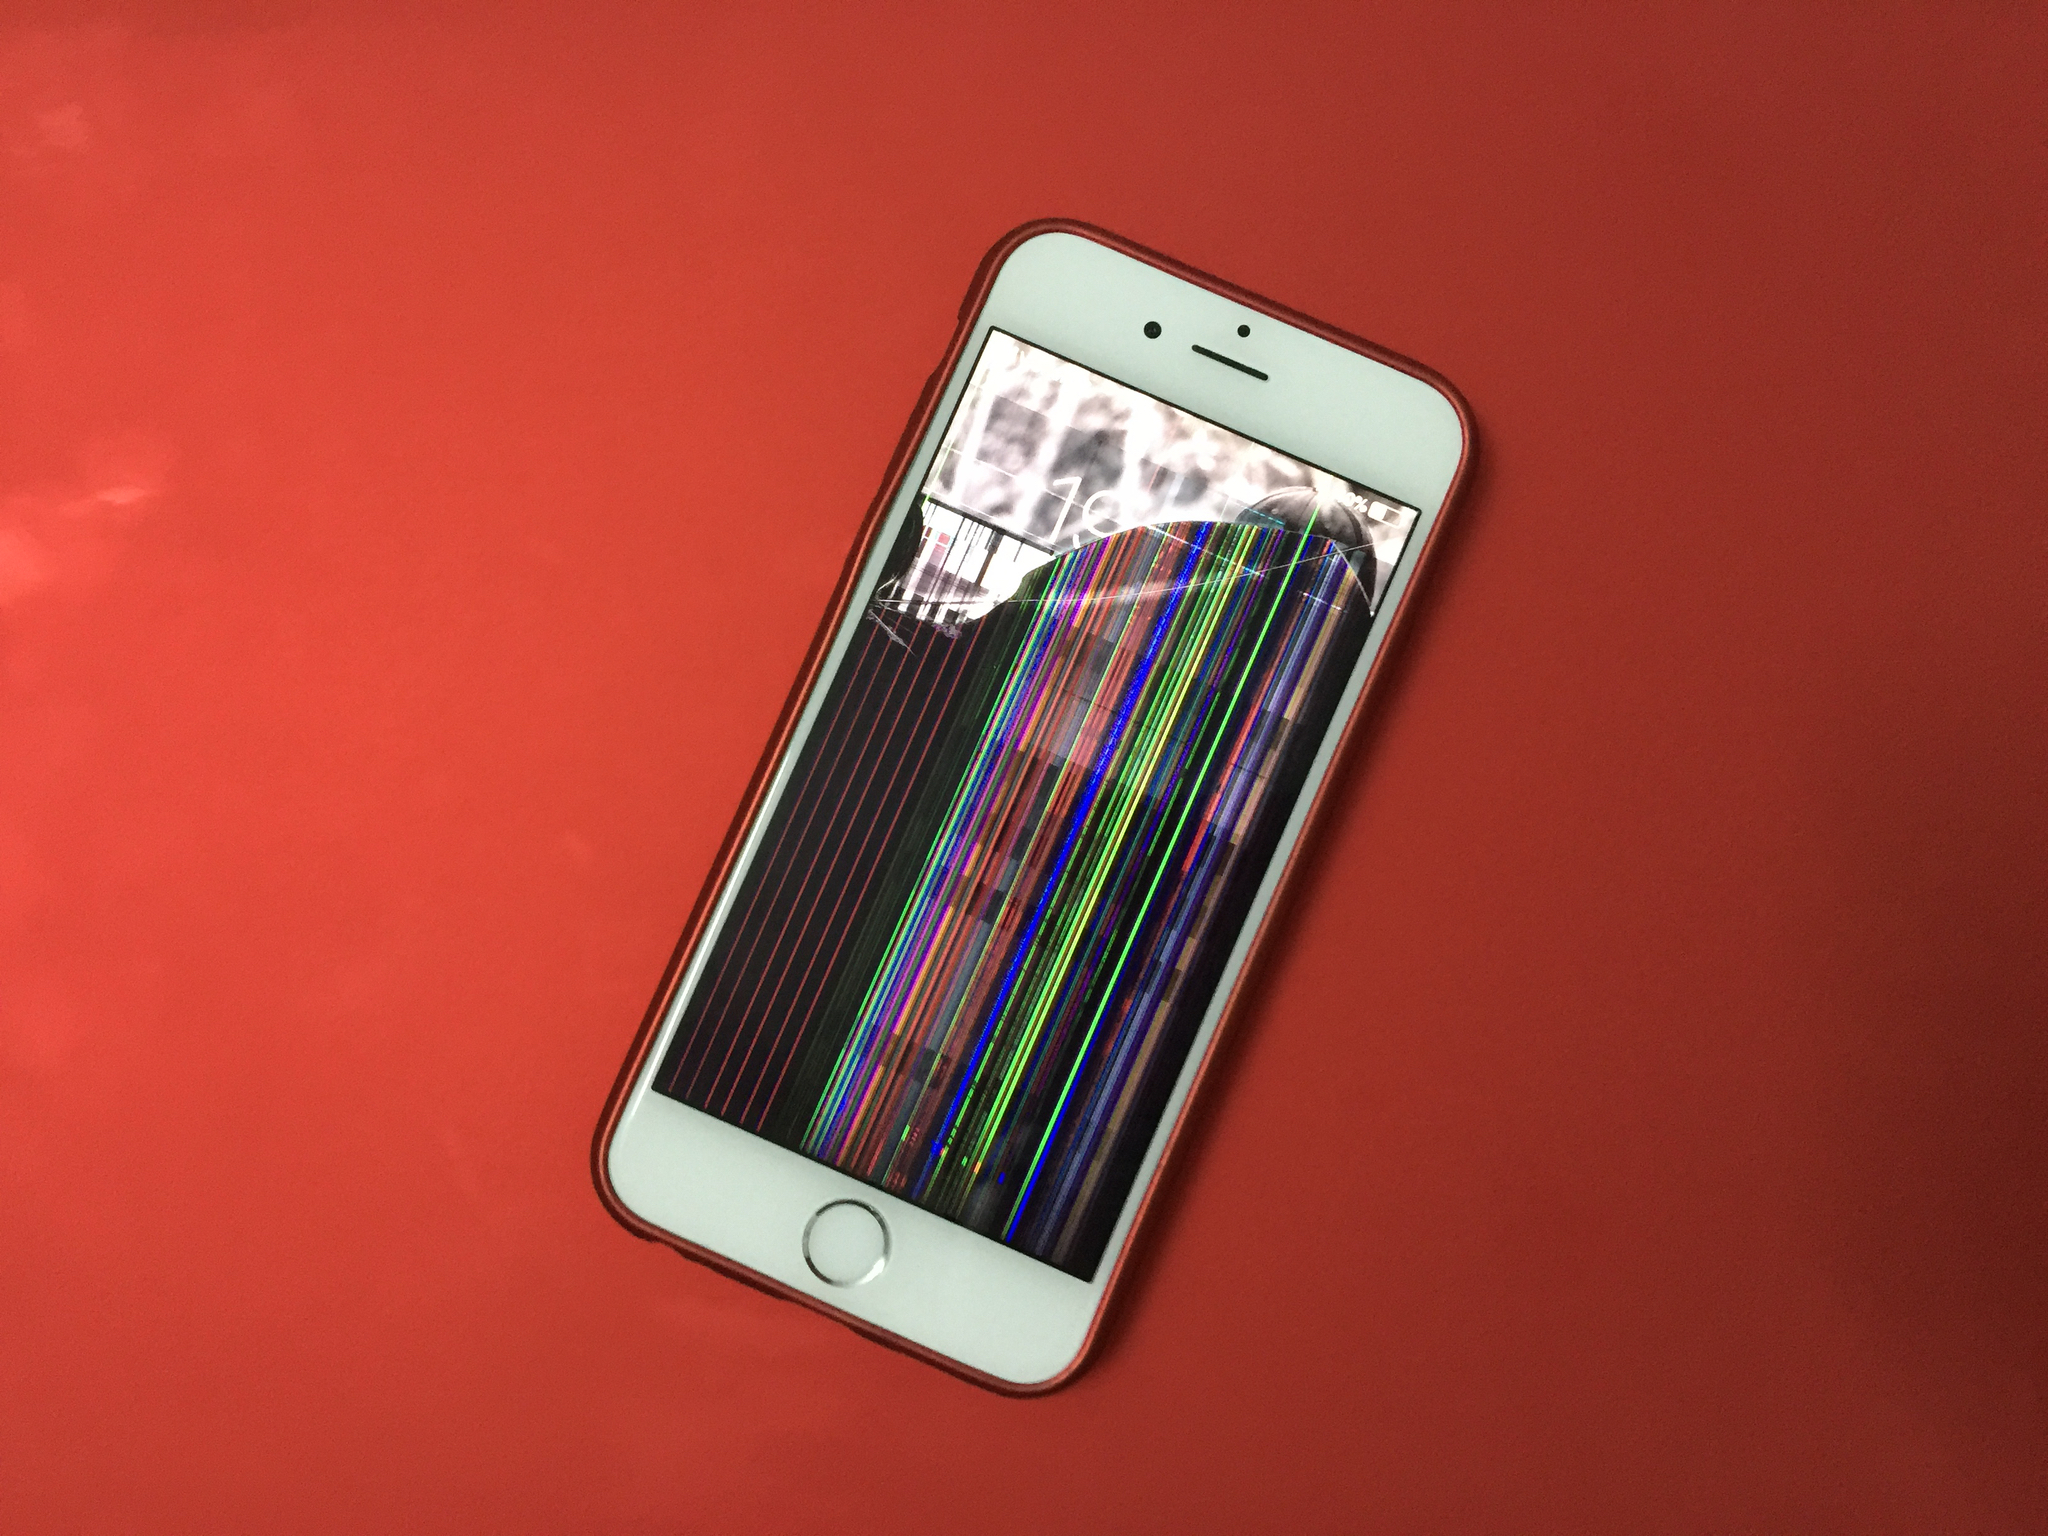 Màn hình iPhone 11 Pro vỡ nát sau cú rơi nhẹ bên thềm Apple Store